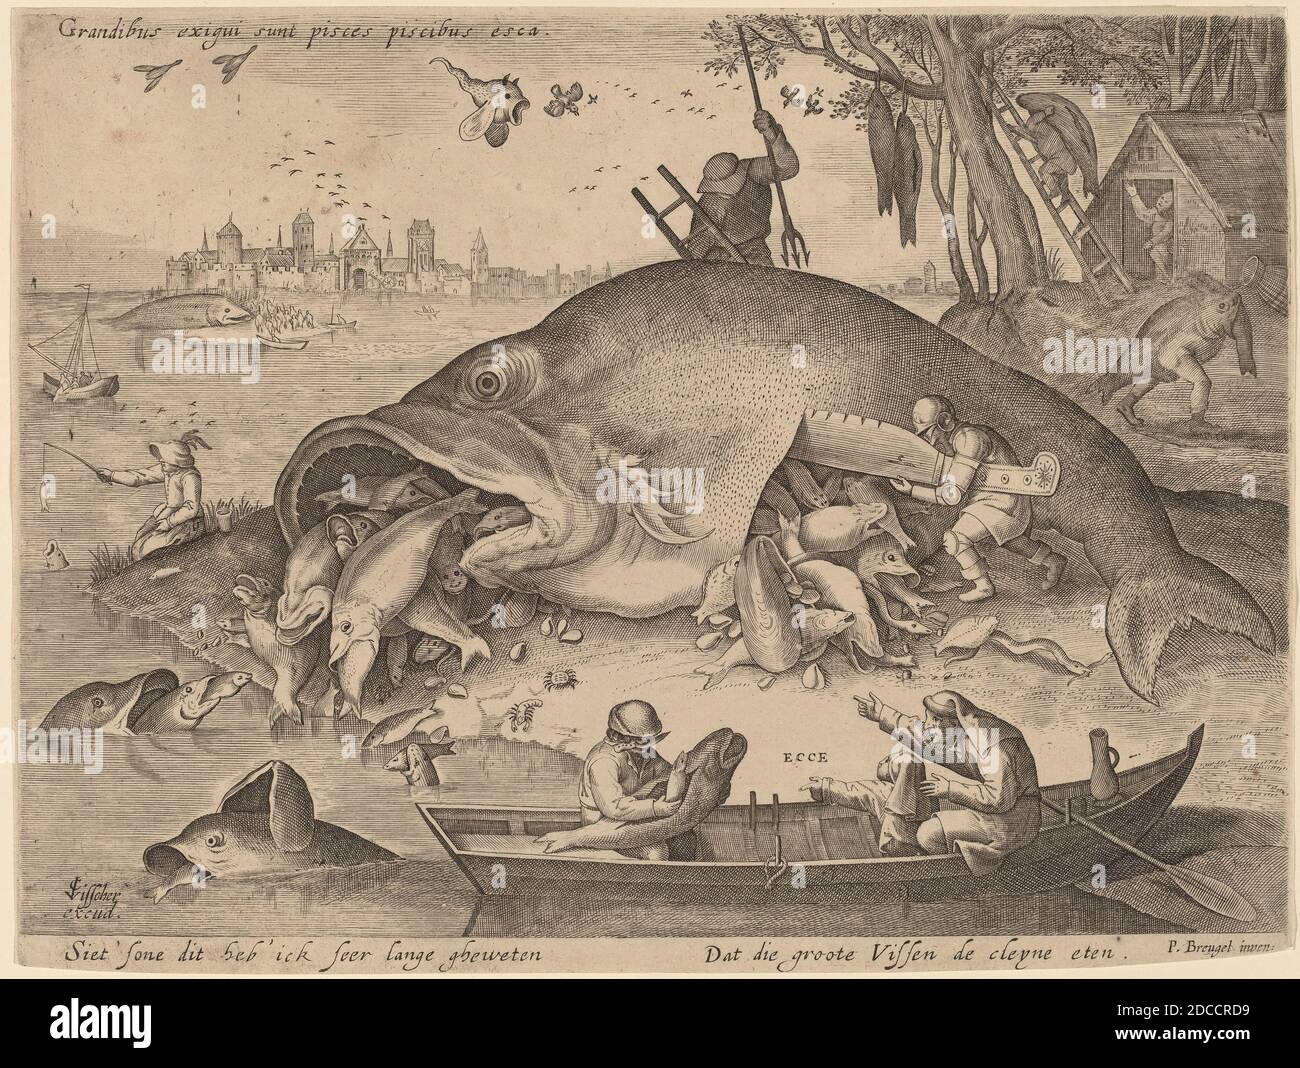 Hendrik Hondius I, (artiste), Néerlandais, 1573 - 1649 ou après, Hieronymus Bosch, (artiste d'après), Netherlandish, c. 1450 - 1516, Pieter Bruegel The Elder, (artiste d'après), Flamand, c. 1525/1530 - 1569, Claes Jansz Visscher, (éditeur), Néerlandais, 1586/1587 - 1652, The Big Fish Eat the Little Fish, c. 1619, gravure Banque D'Images